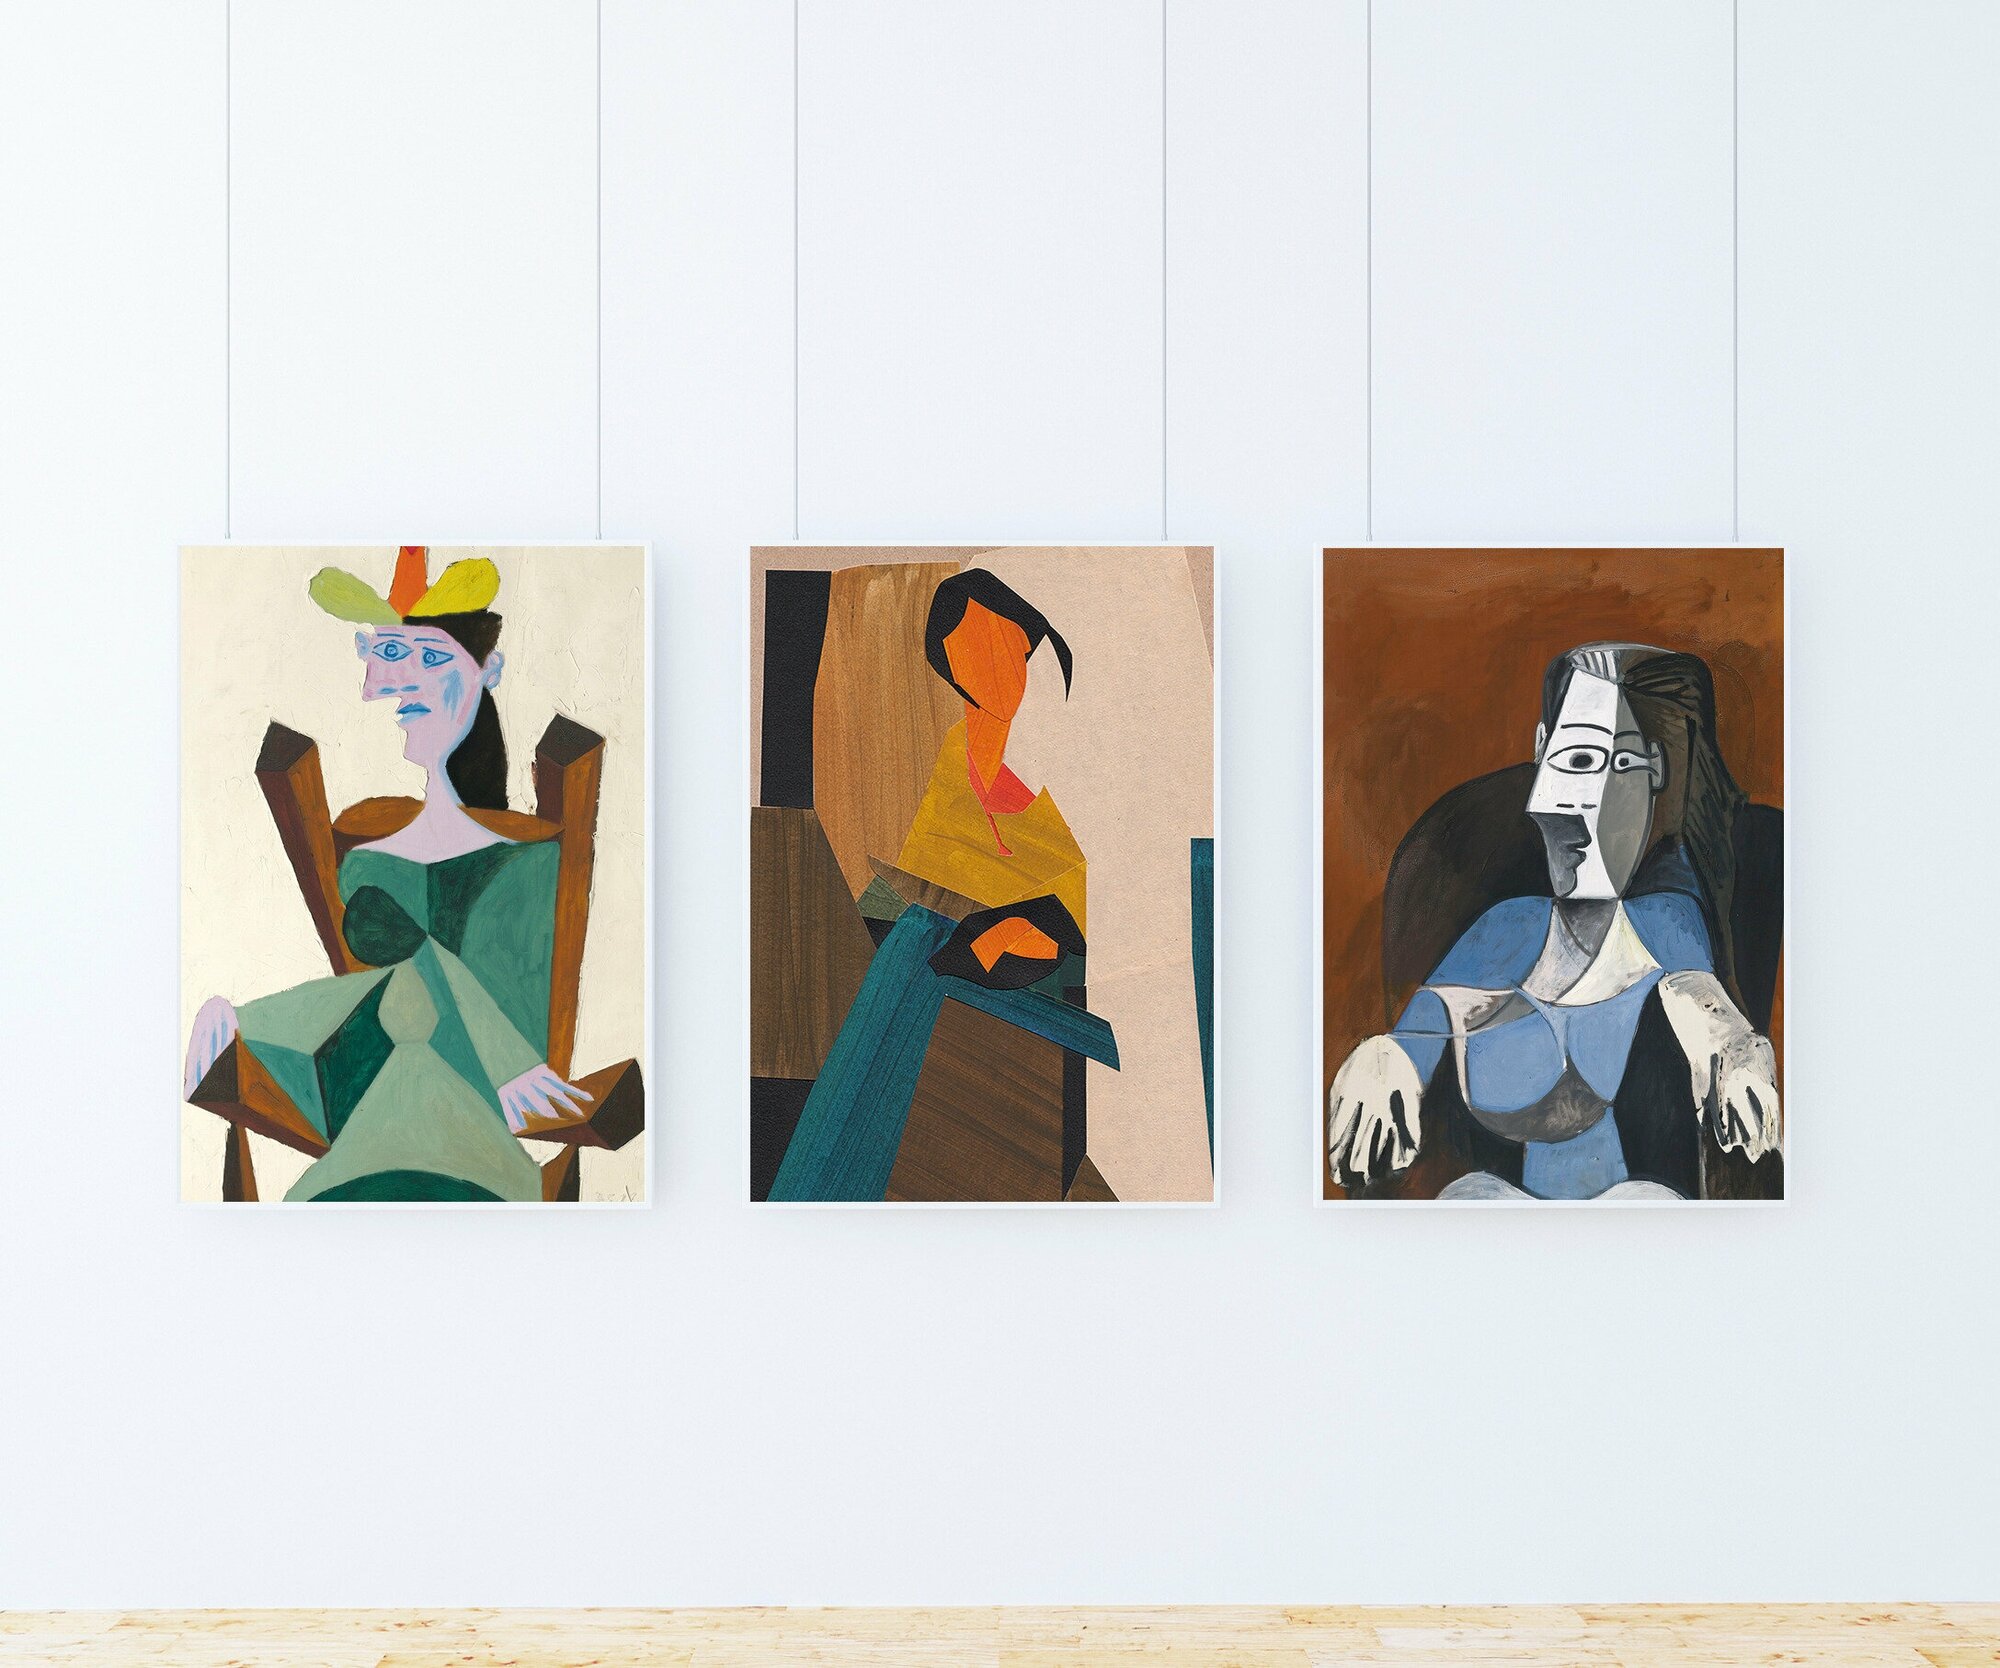 Набор плакатов "Пабло Пикассо" 3 шт. / Набор интерьерных постеров формата А2 (40х60 см) без рамы